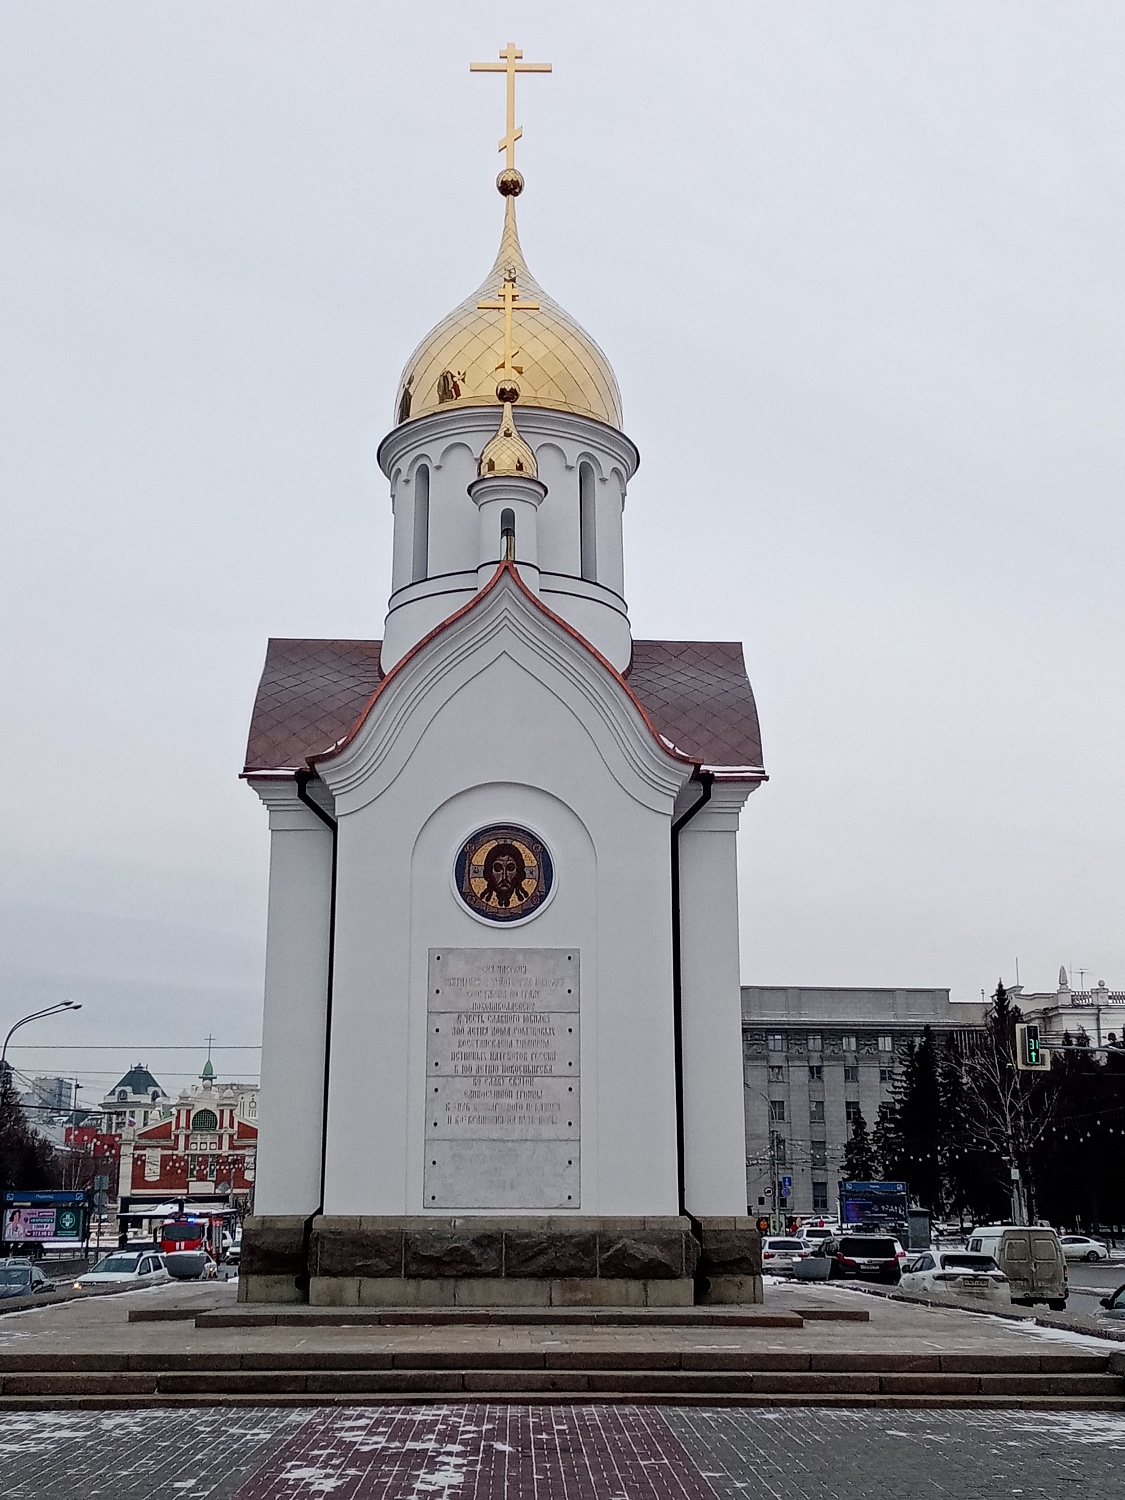 Вид часовни во имя Святителя и Чудотворца Николая на Красном проспекте г. Новосибирска